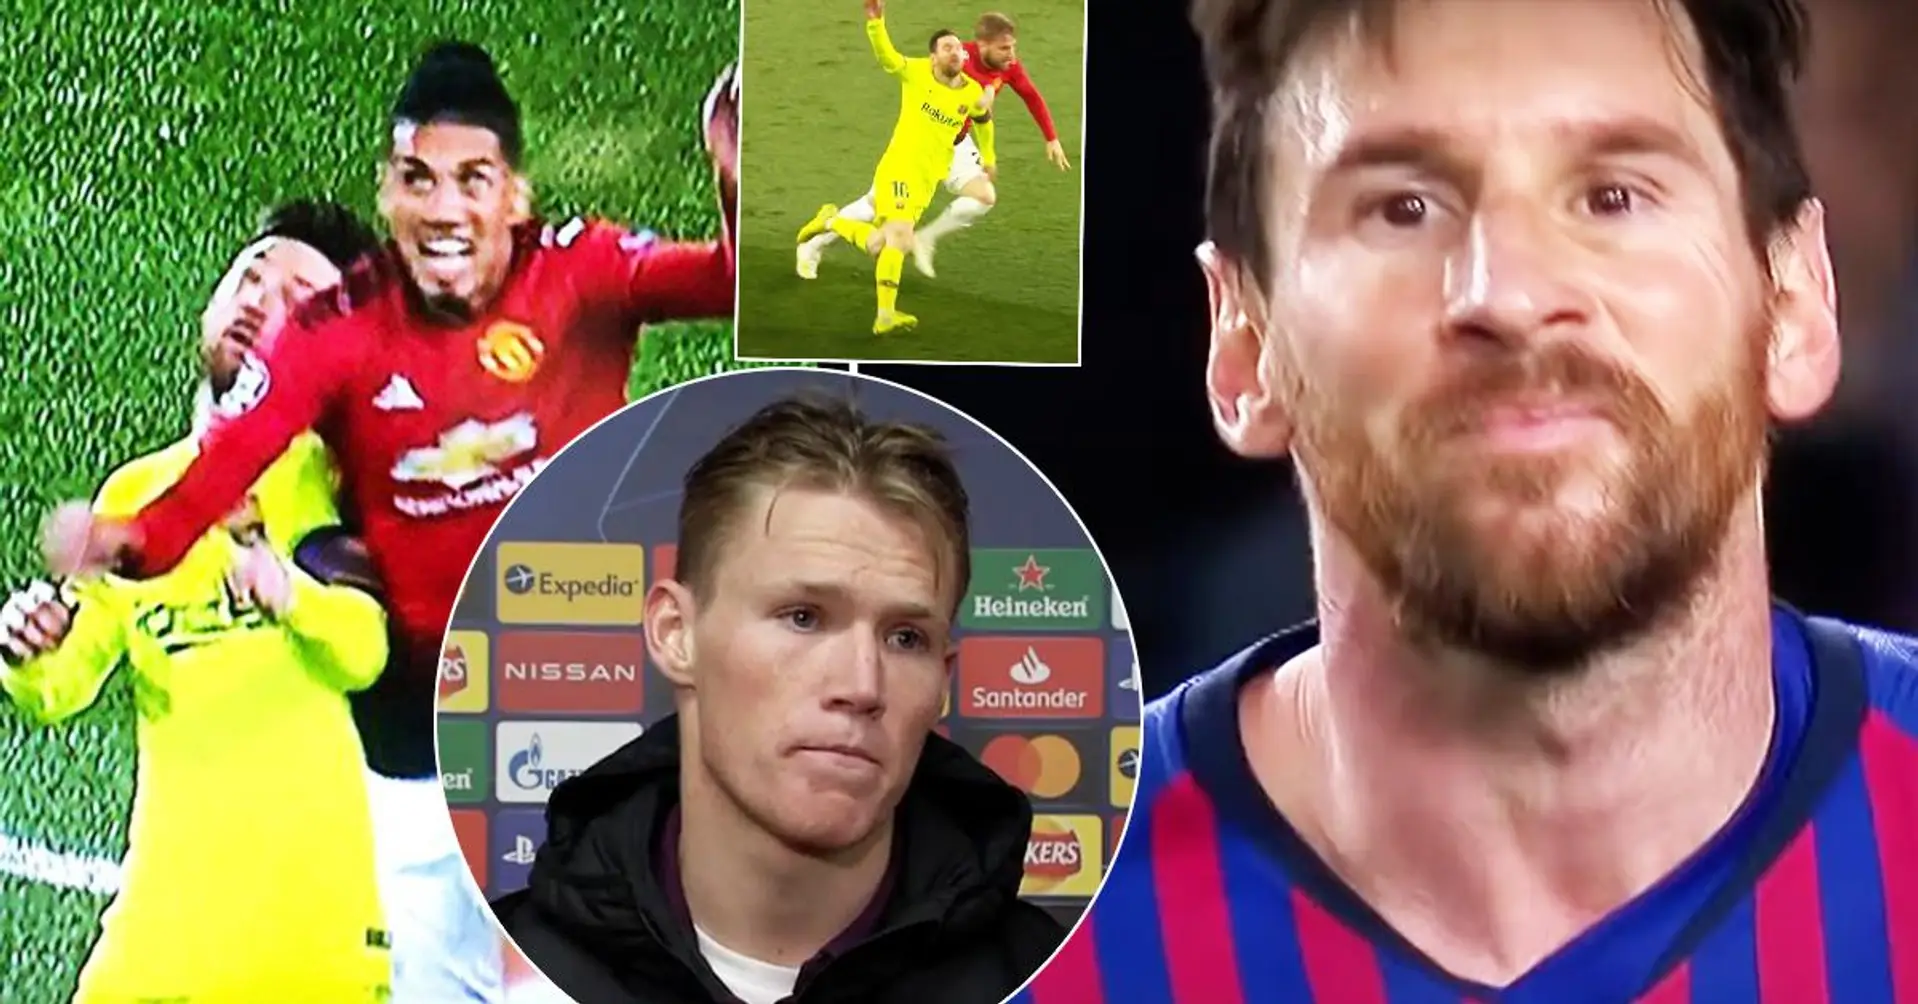 "Nein, nein, sag ihm, dass ich es nicht war!": McTominay enthüllt komische Interaktion mit Leo Messi, nachdem er nach seinem Trikot gefragt hatte  